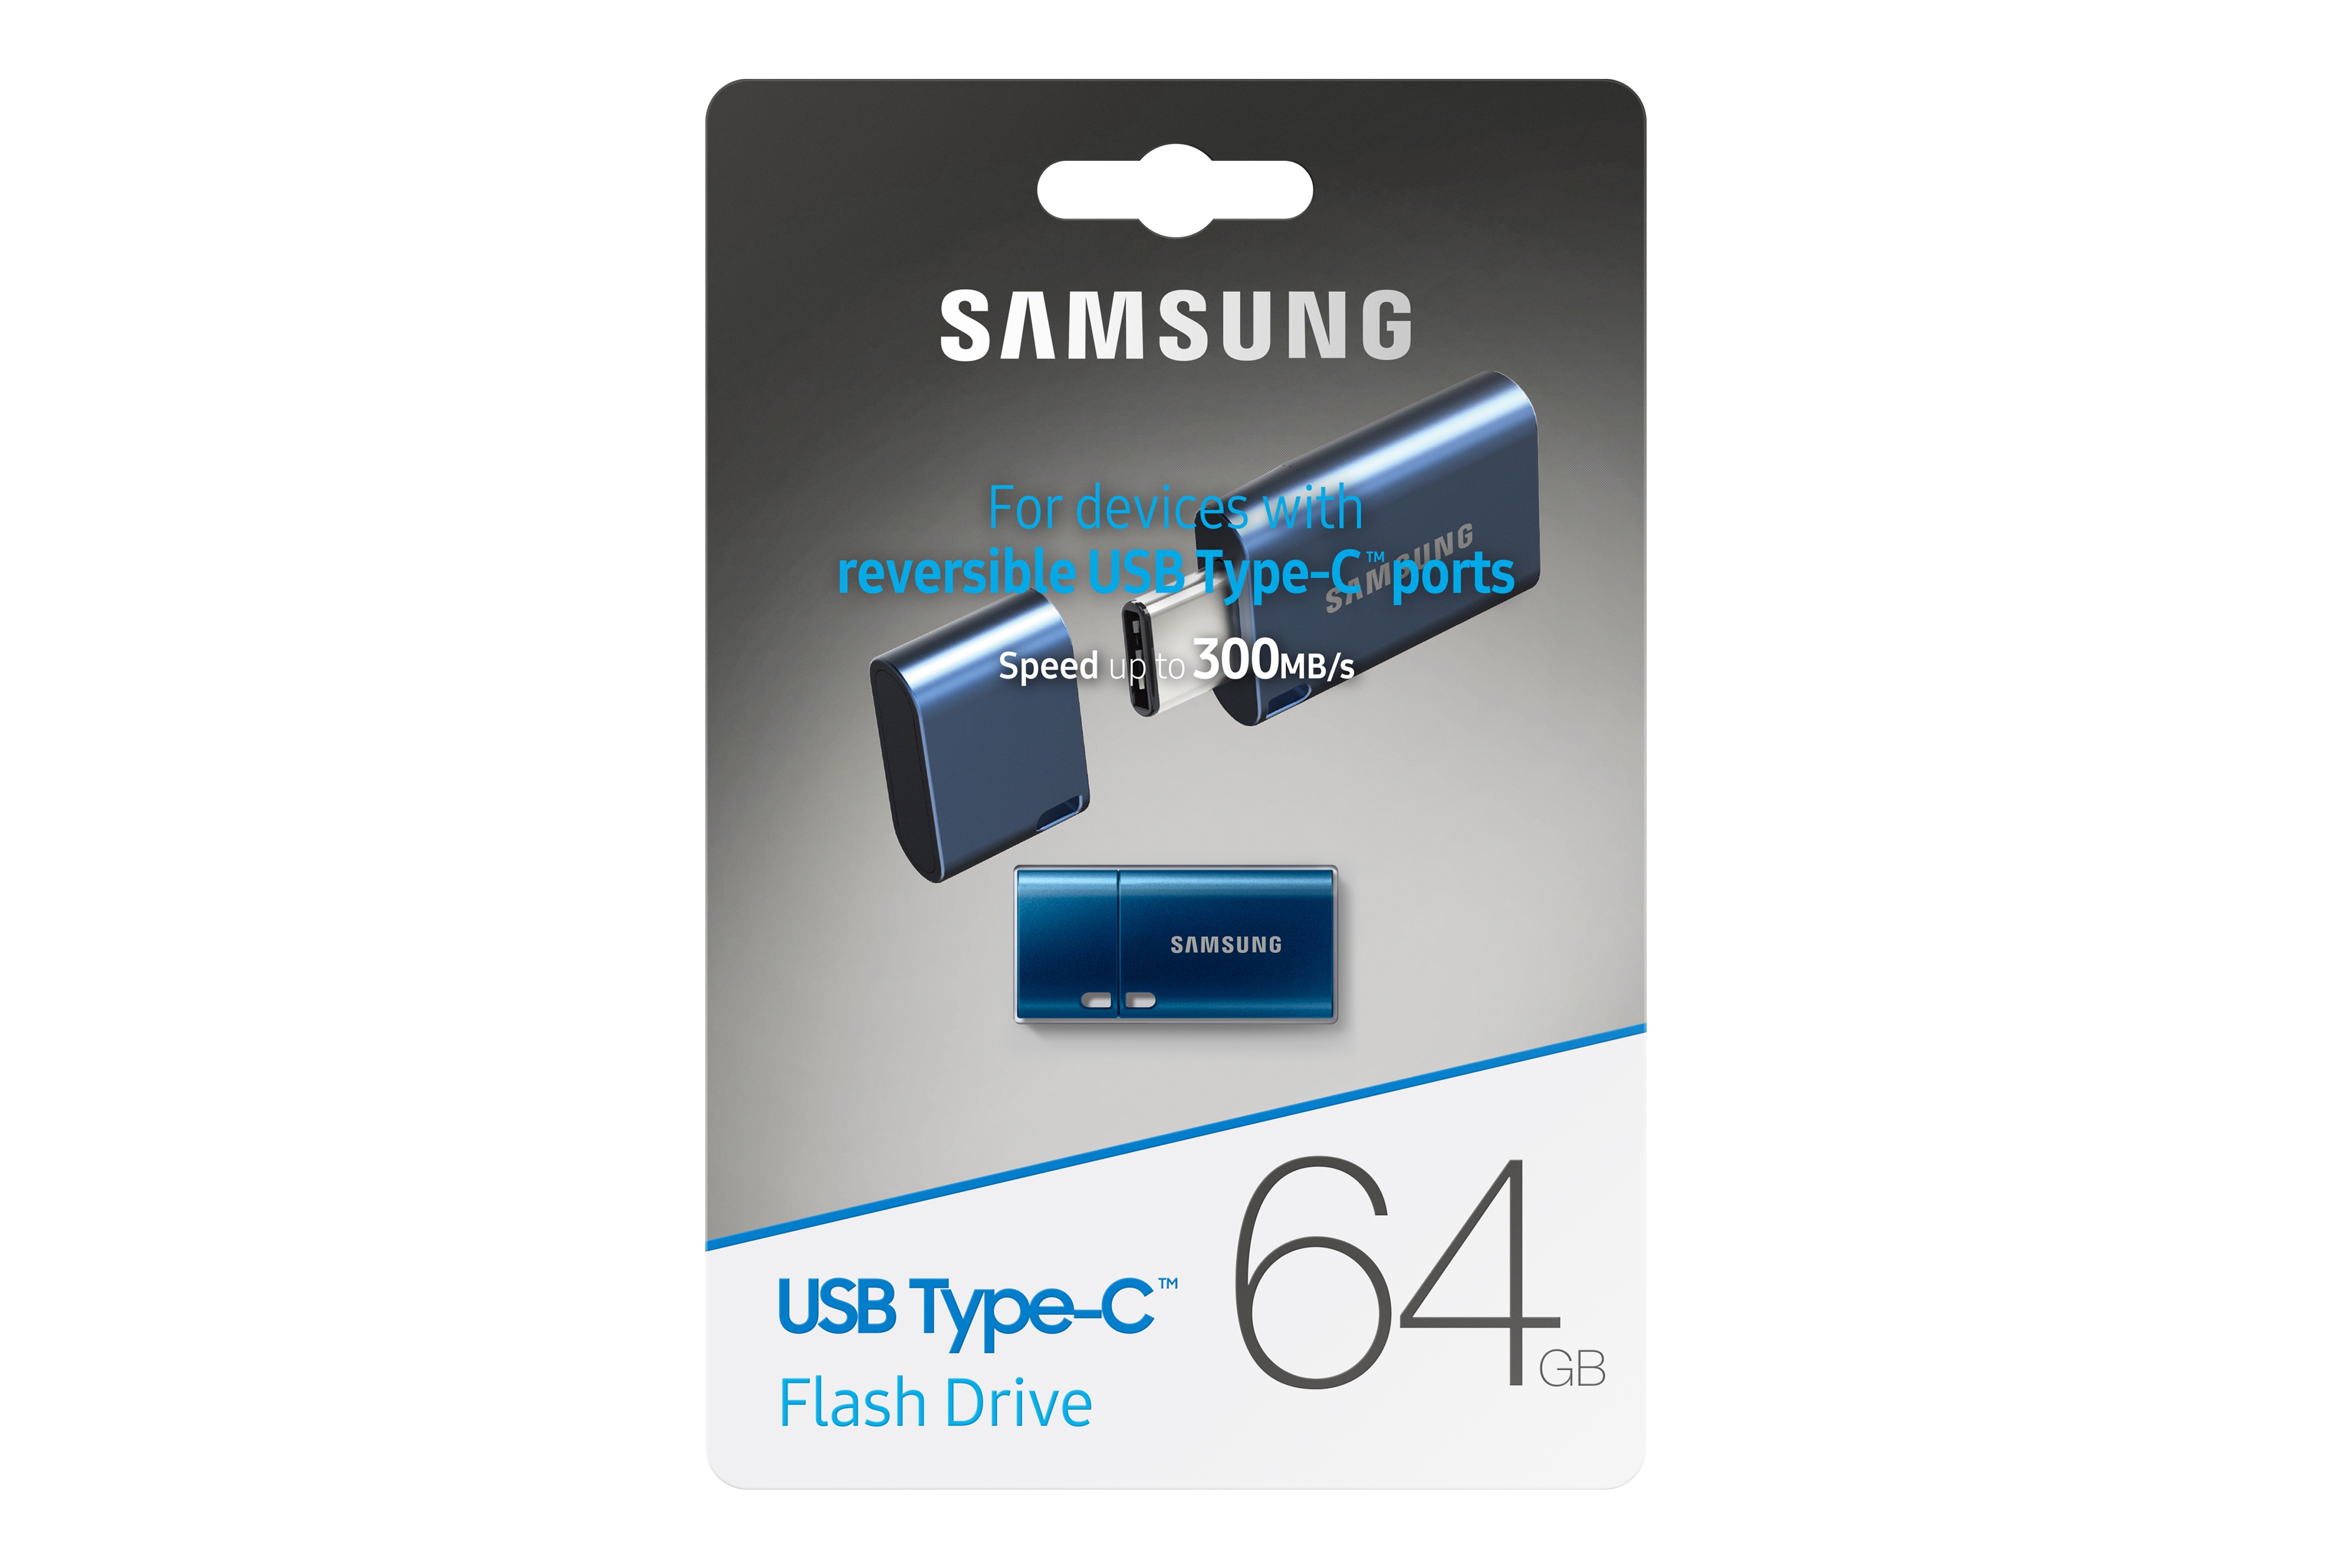 USB Flash Drive 64GB (MUF-64DA/AM) - MUF-64DA/AM | Samsung